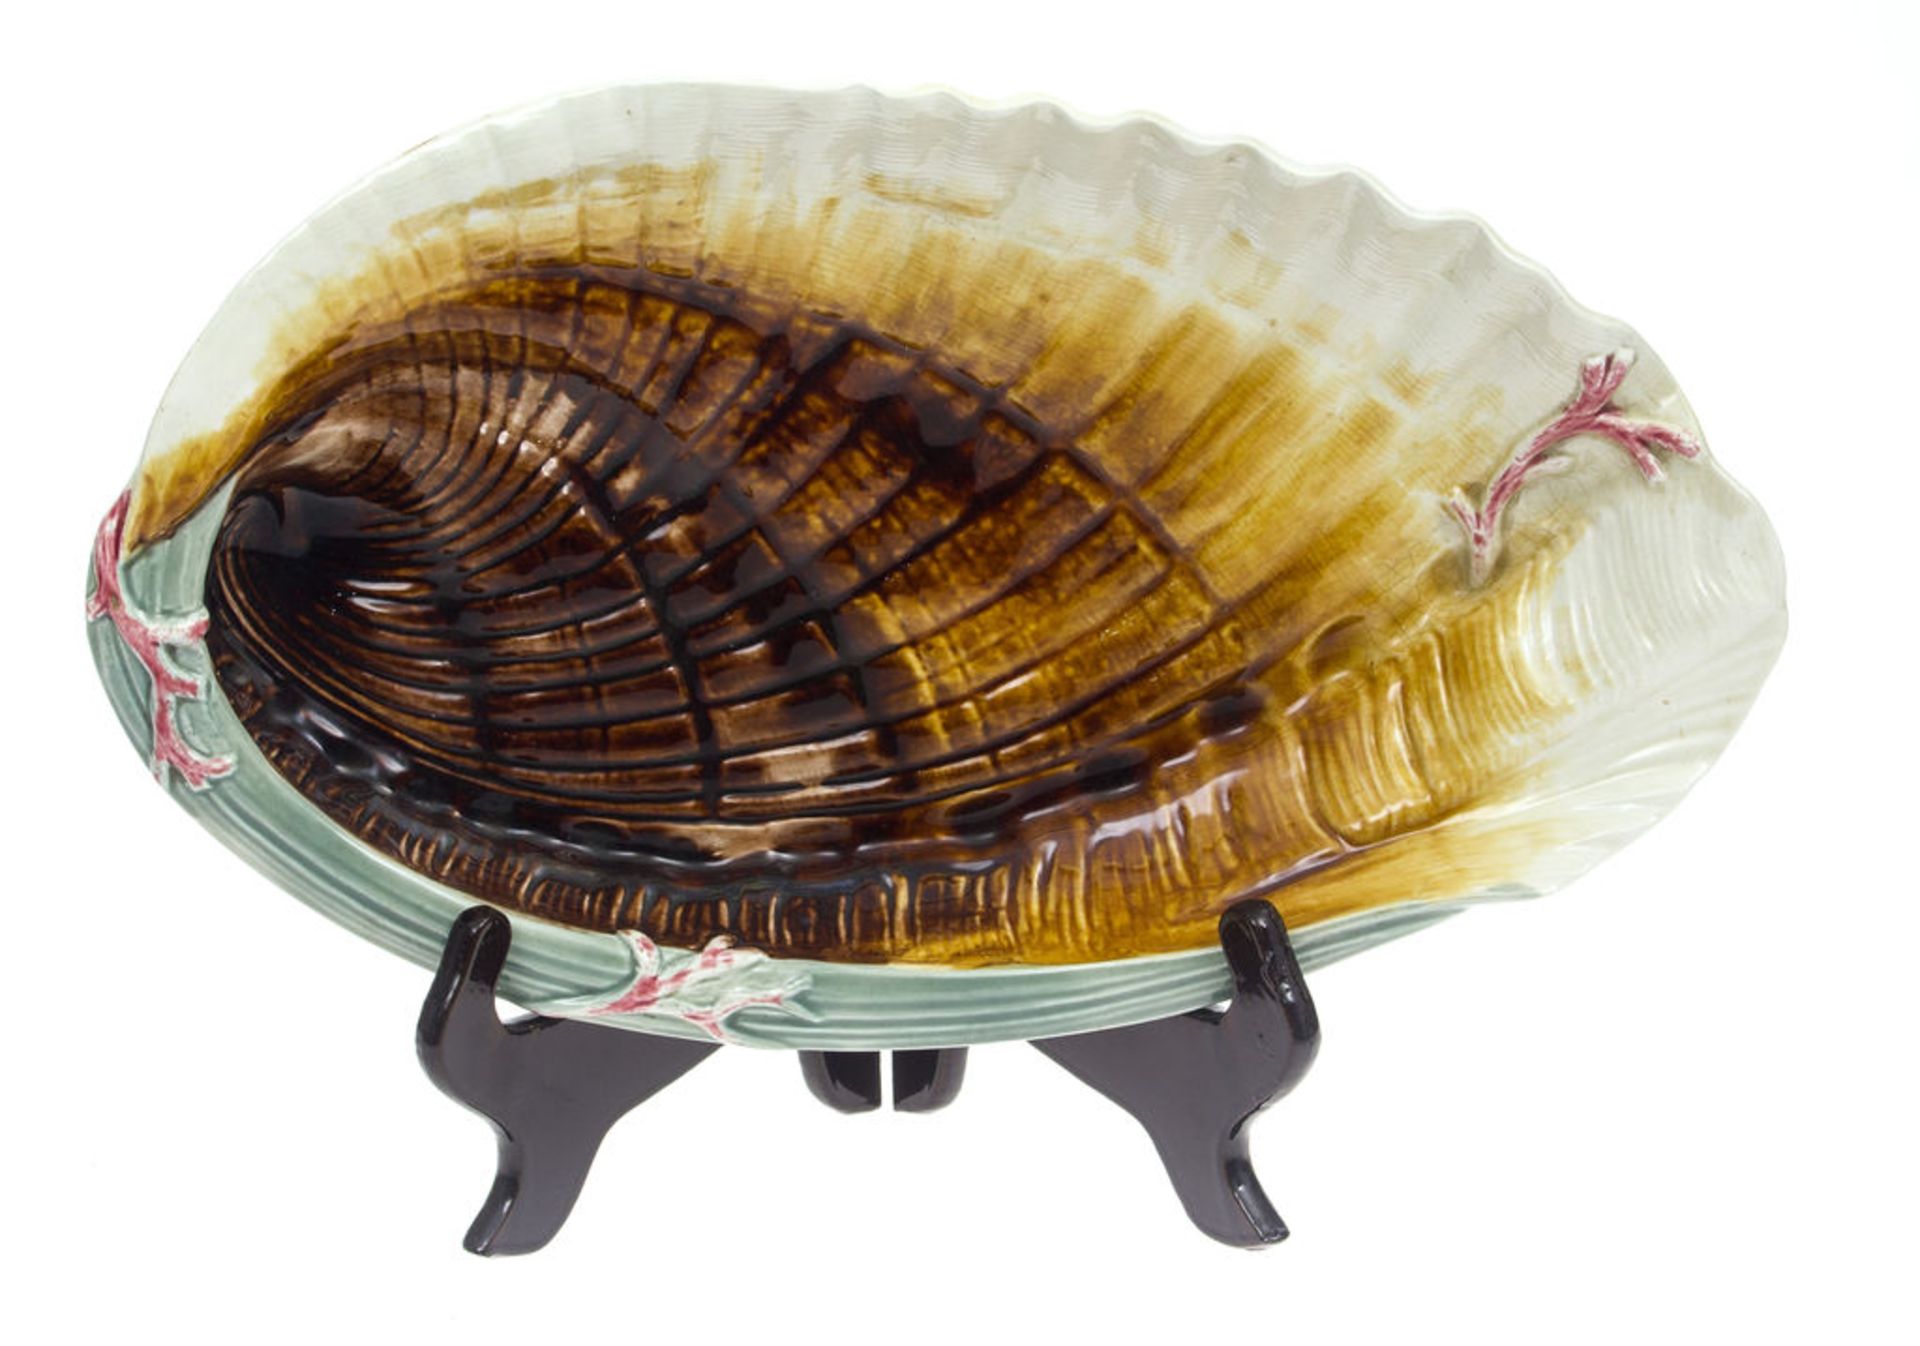 Decorative kuznetsov plate "Shell"